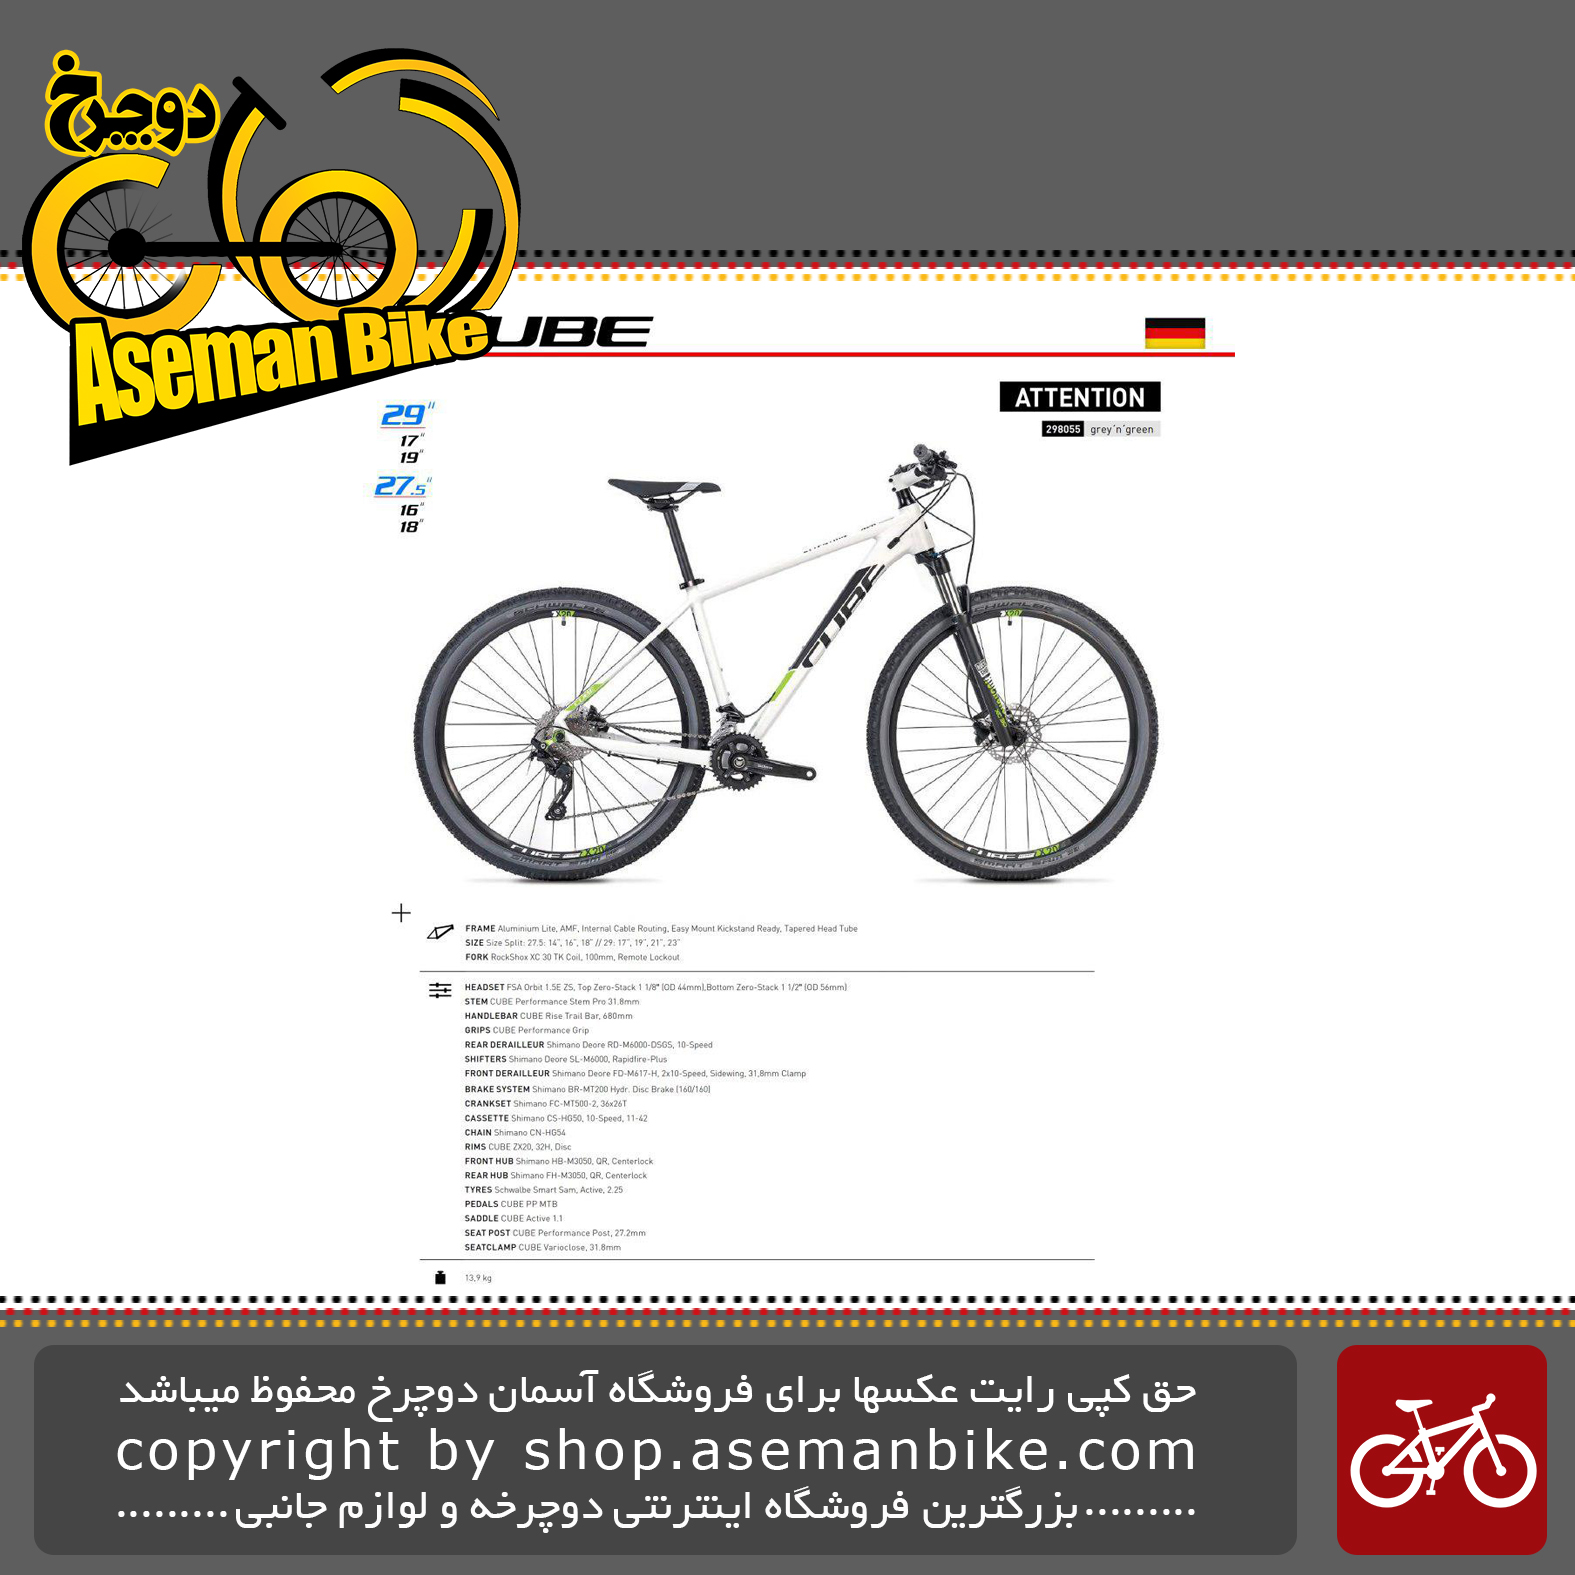 دوچرخه کوهستان کیوب مدل اتنشن سبز و خاکستری سایز 27.5 2019 CUBE Mountain Bicycle Attention 27.5 2019